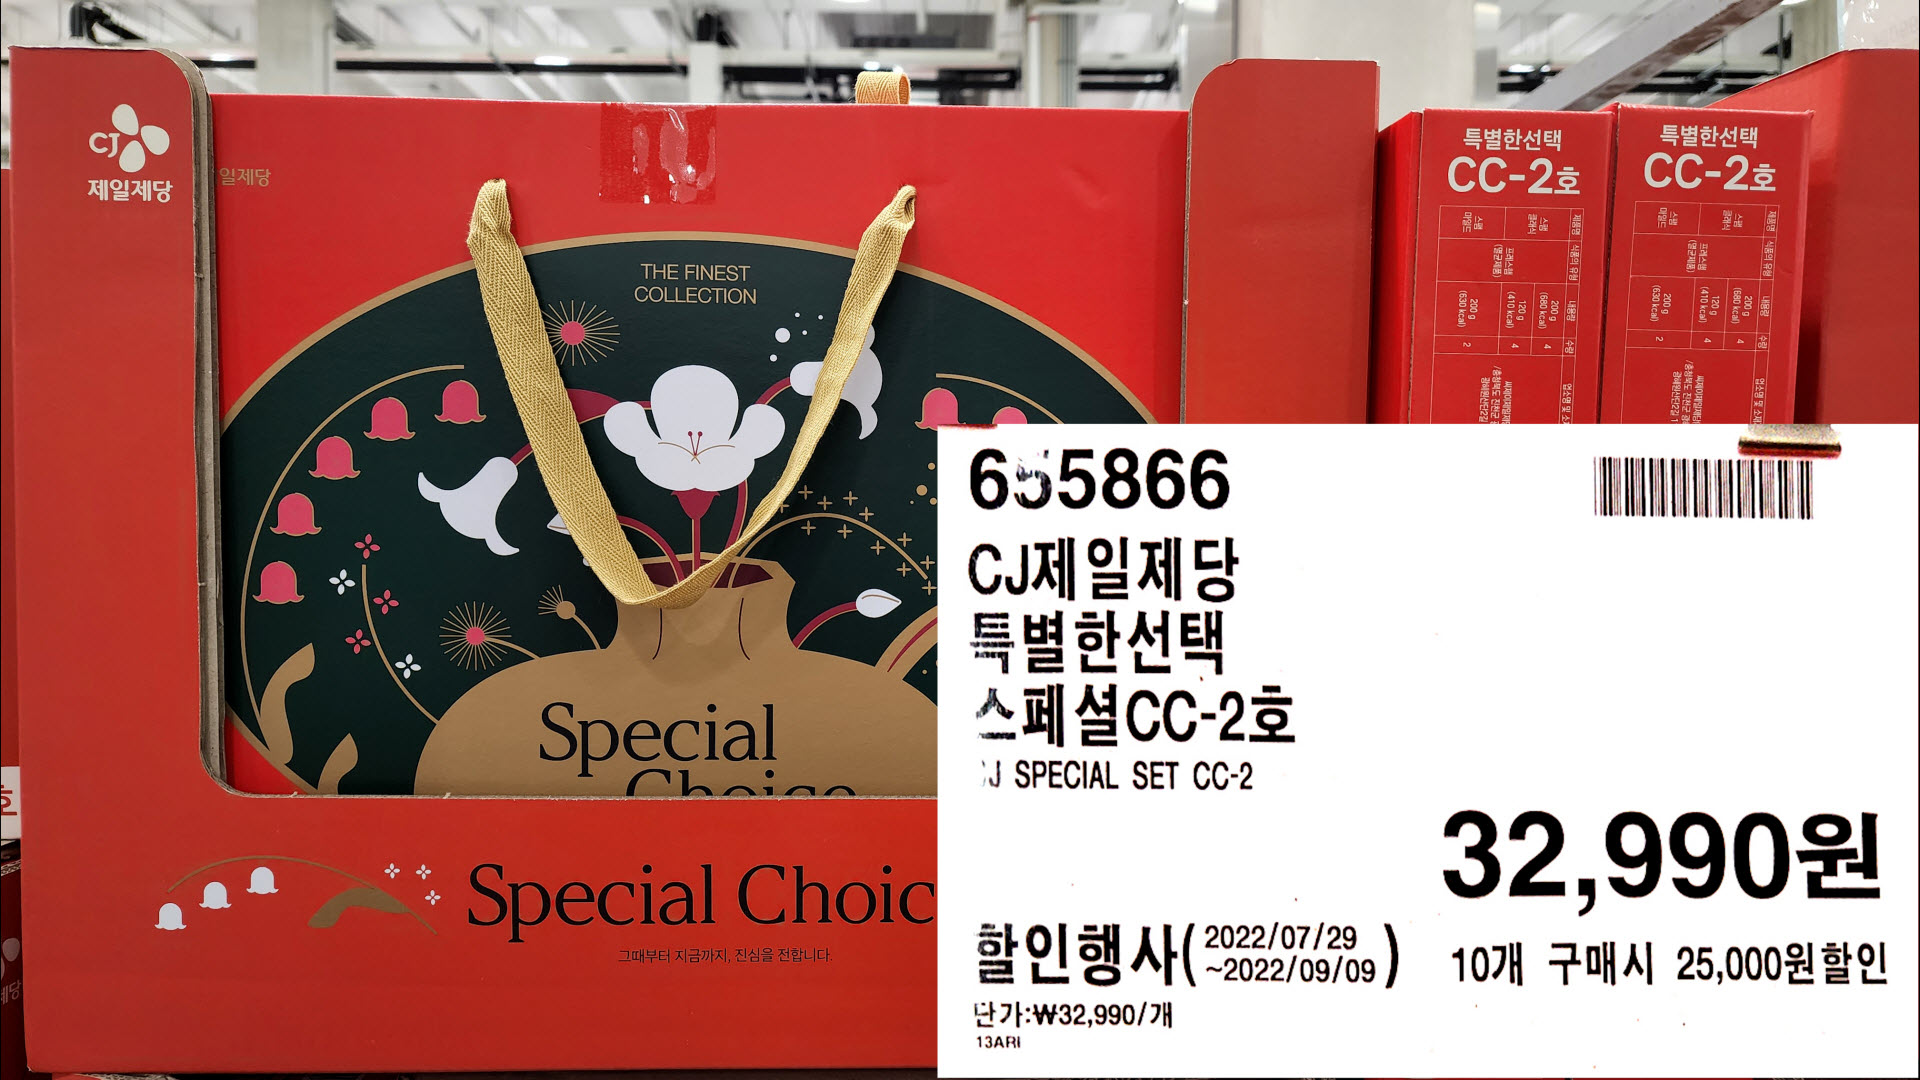 CJ제일제당
특별한선택
스페셜CC-2호
J SPECIAL SET CC-2
32,990원